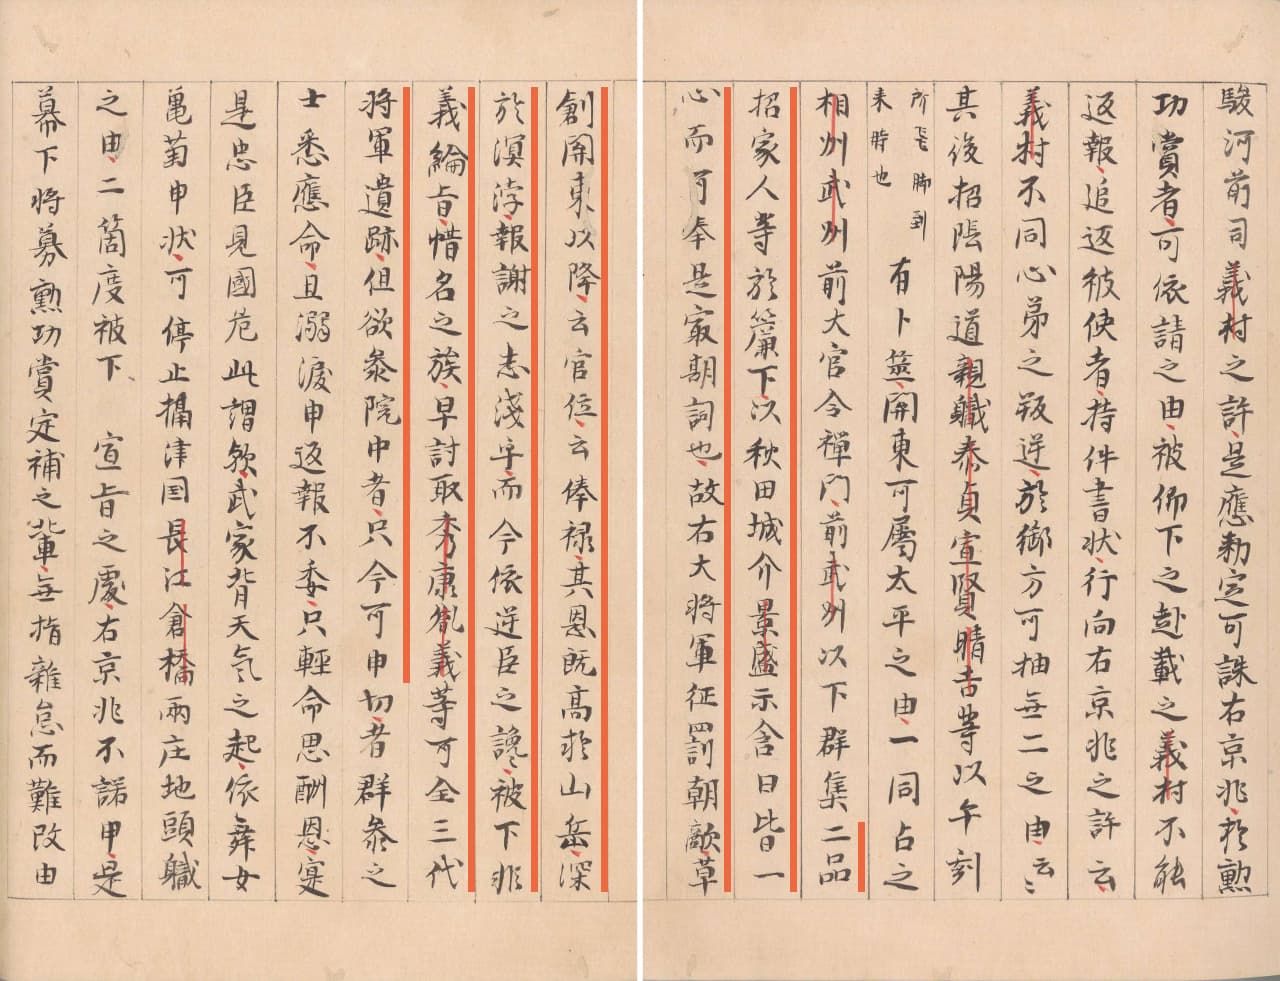 Запись от 19 дня пятой луны 1221 года в «Зерцале Восточных земель» (Адзума кагами), описывающая речь Масако (находится в Национальном архиве)